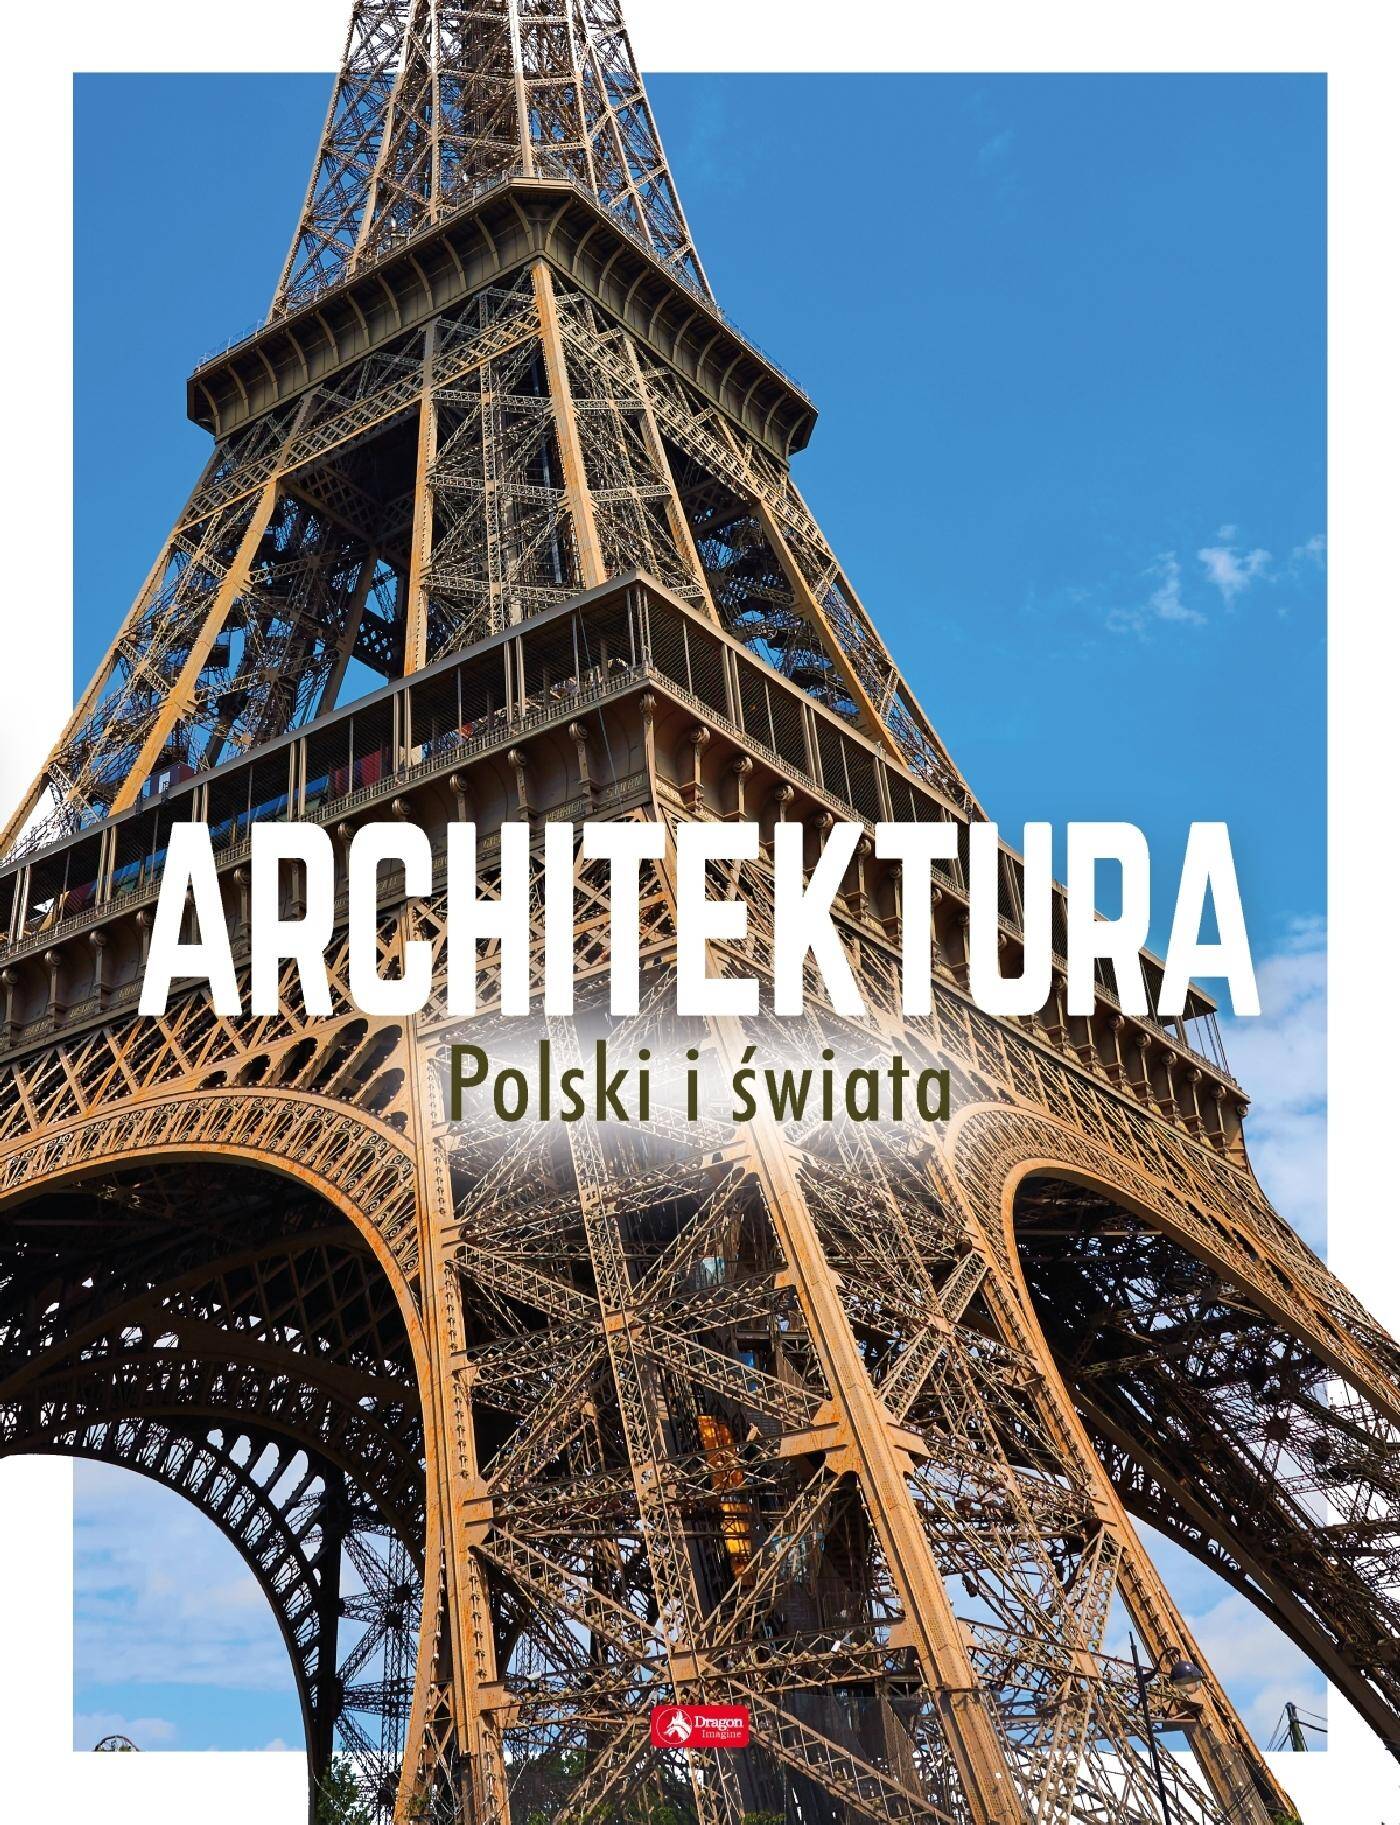 Architektura polski i świata